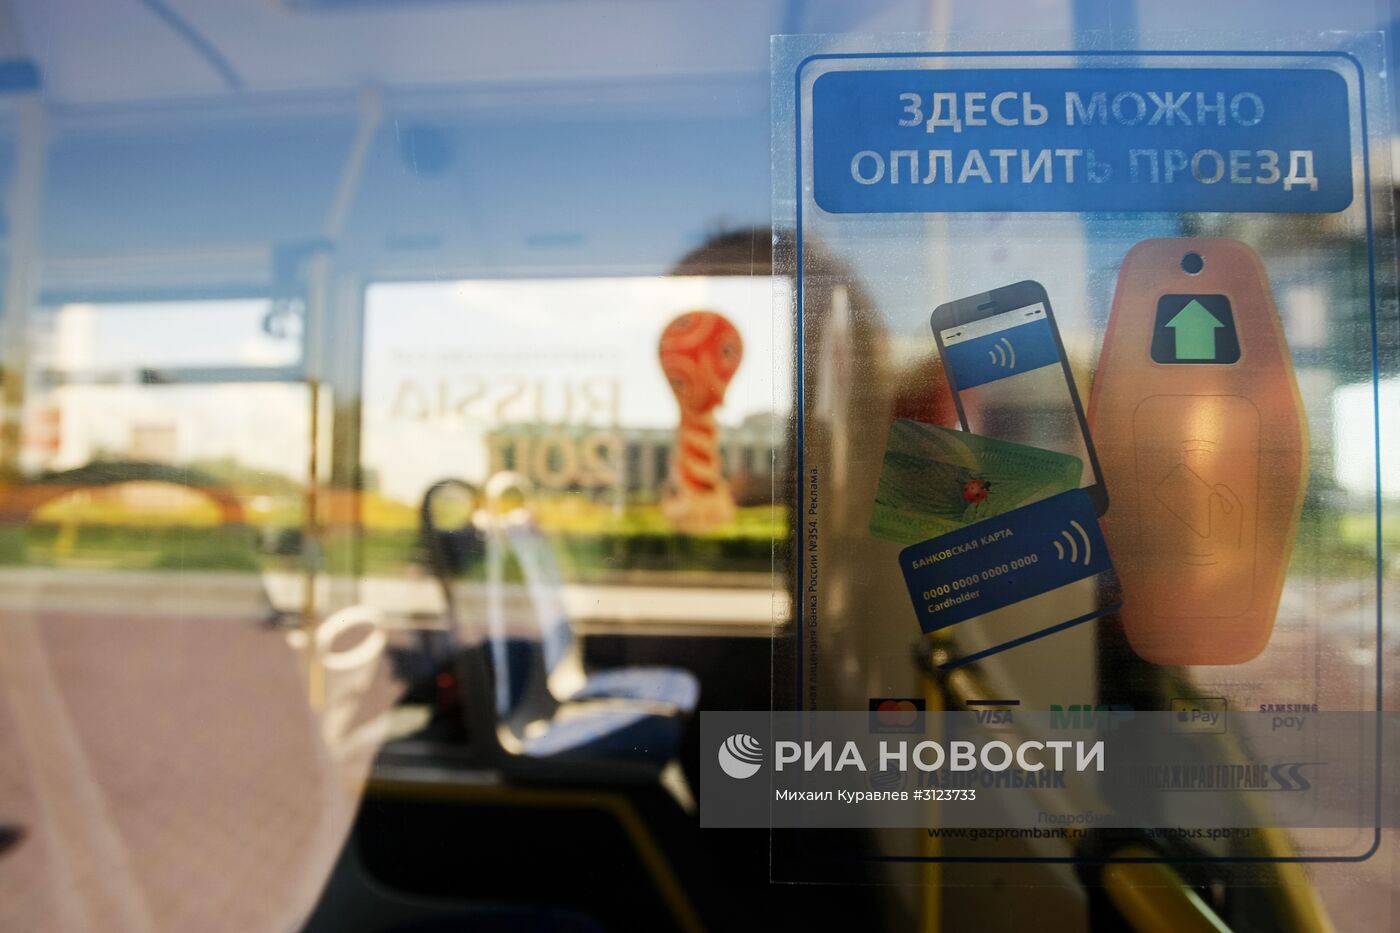 Демонстрация новой технологии оплаты проезда банковскими картами и мобильными устройствами в автобусах Санкт-Петербурга